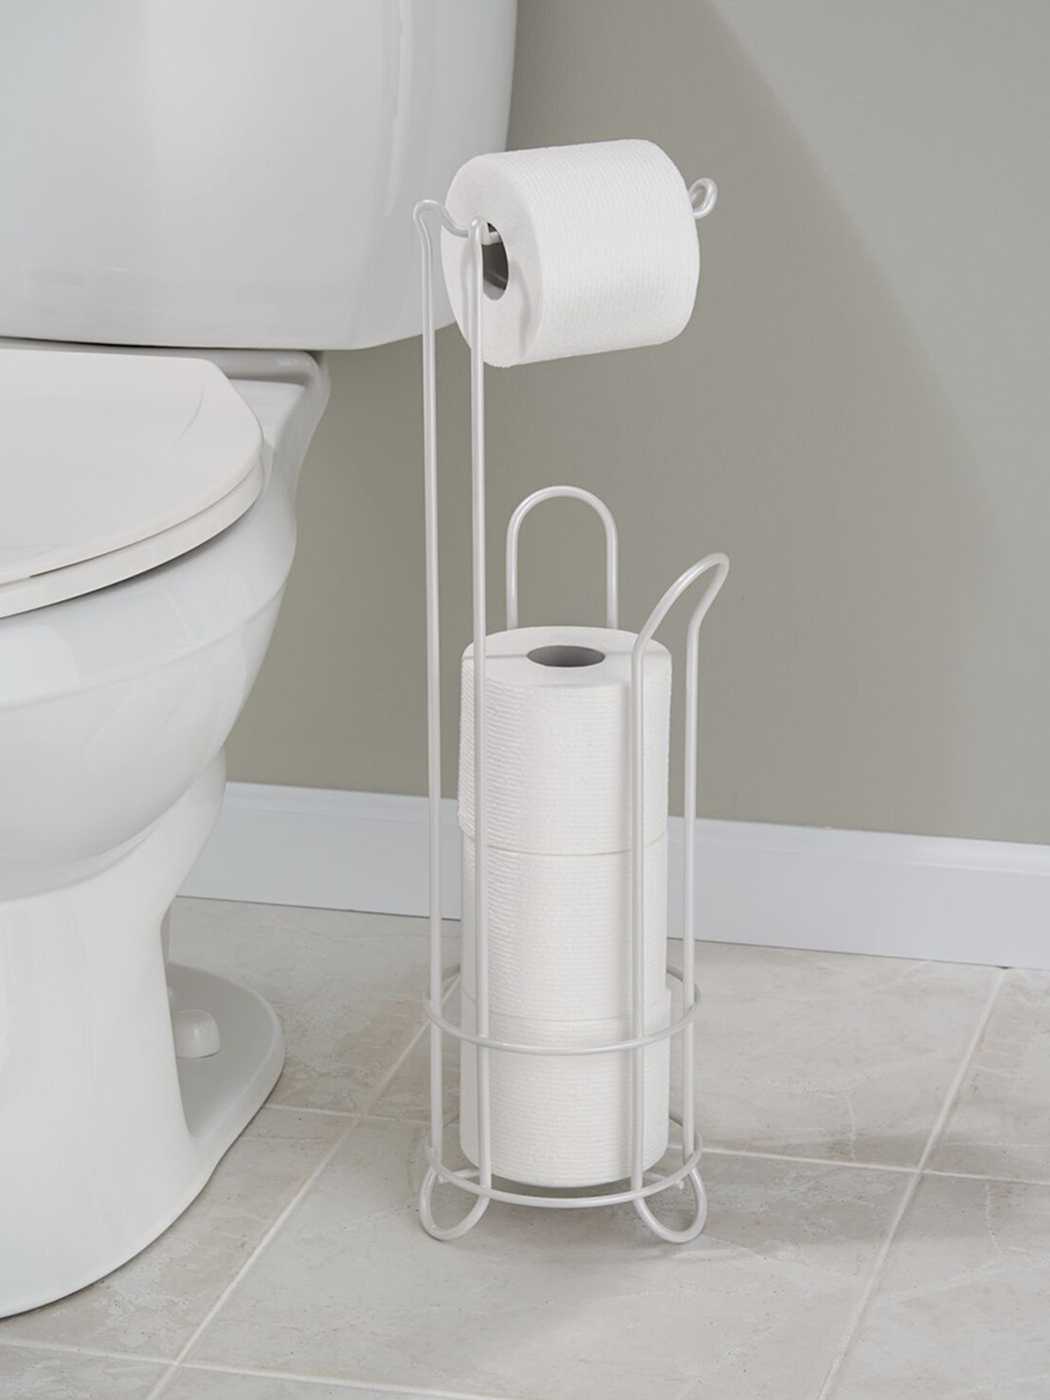 Держатели для туалетной бумаги: стандартные варианты и оригинальные идеи (21 фото)